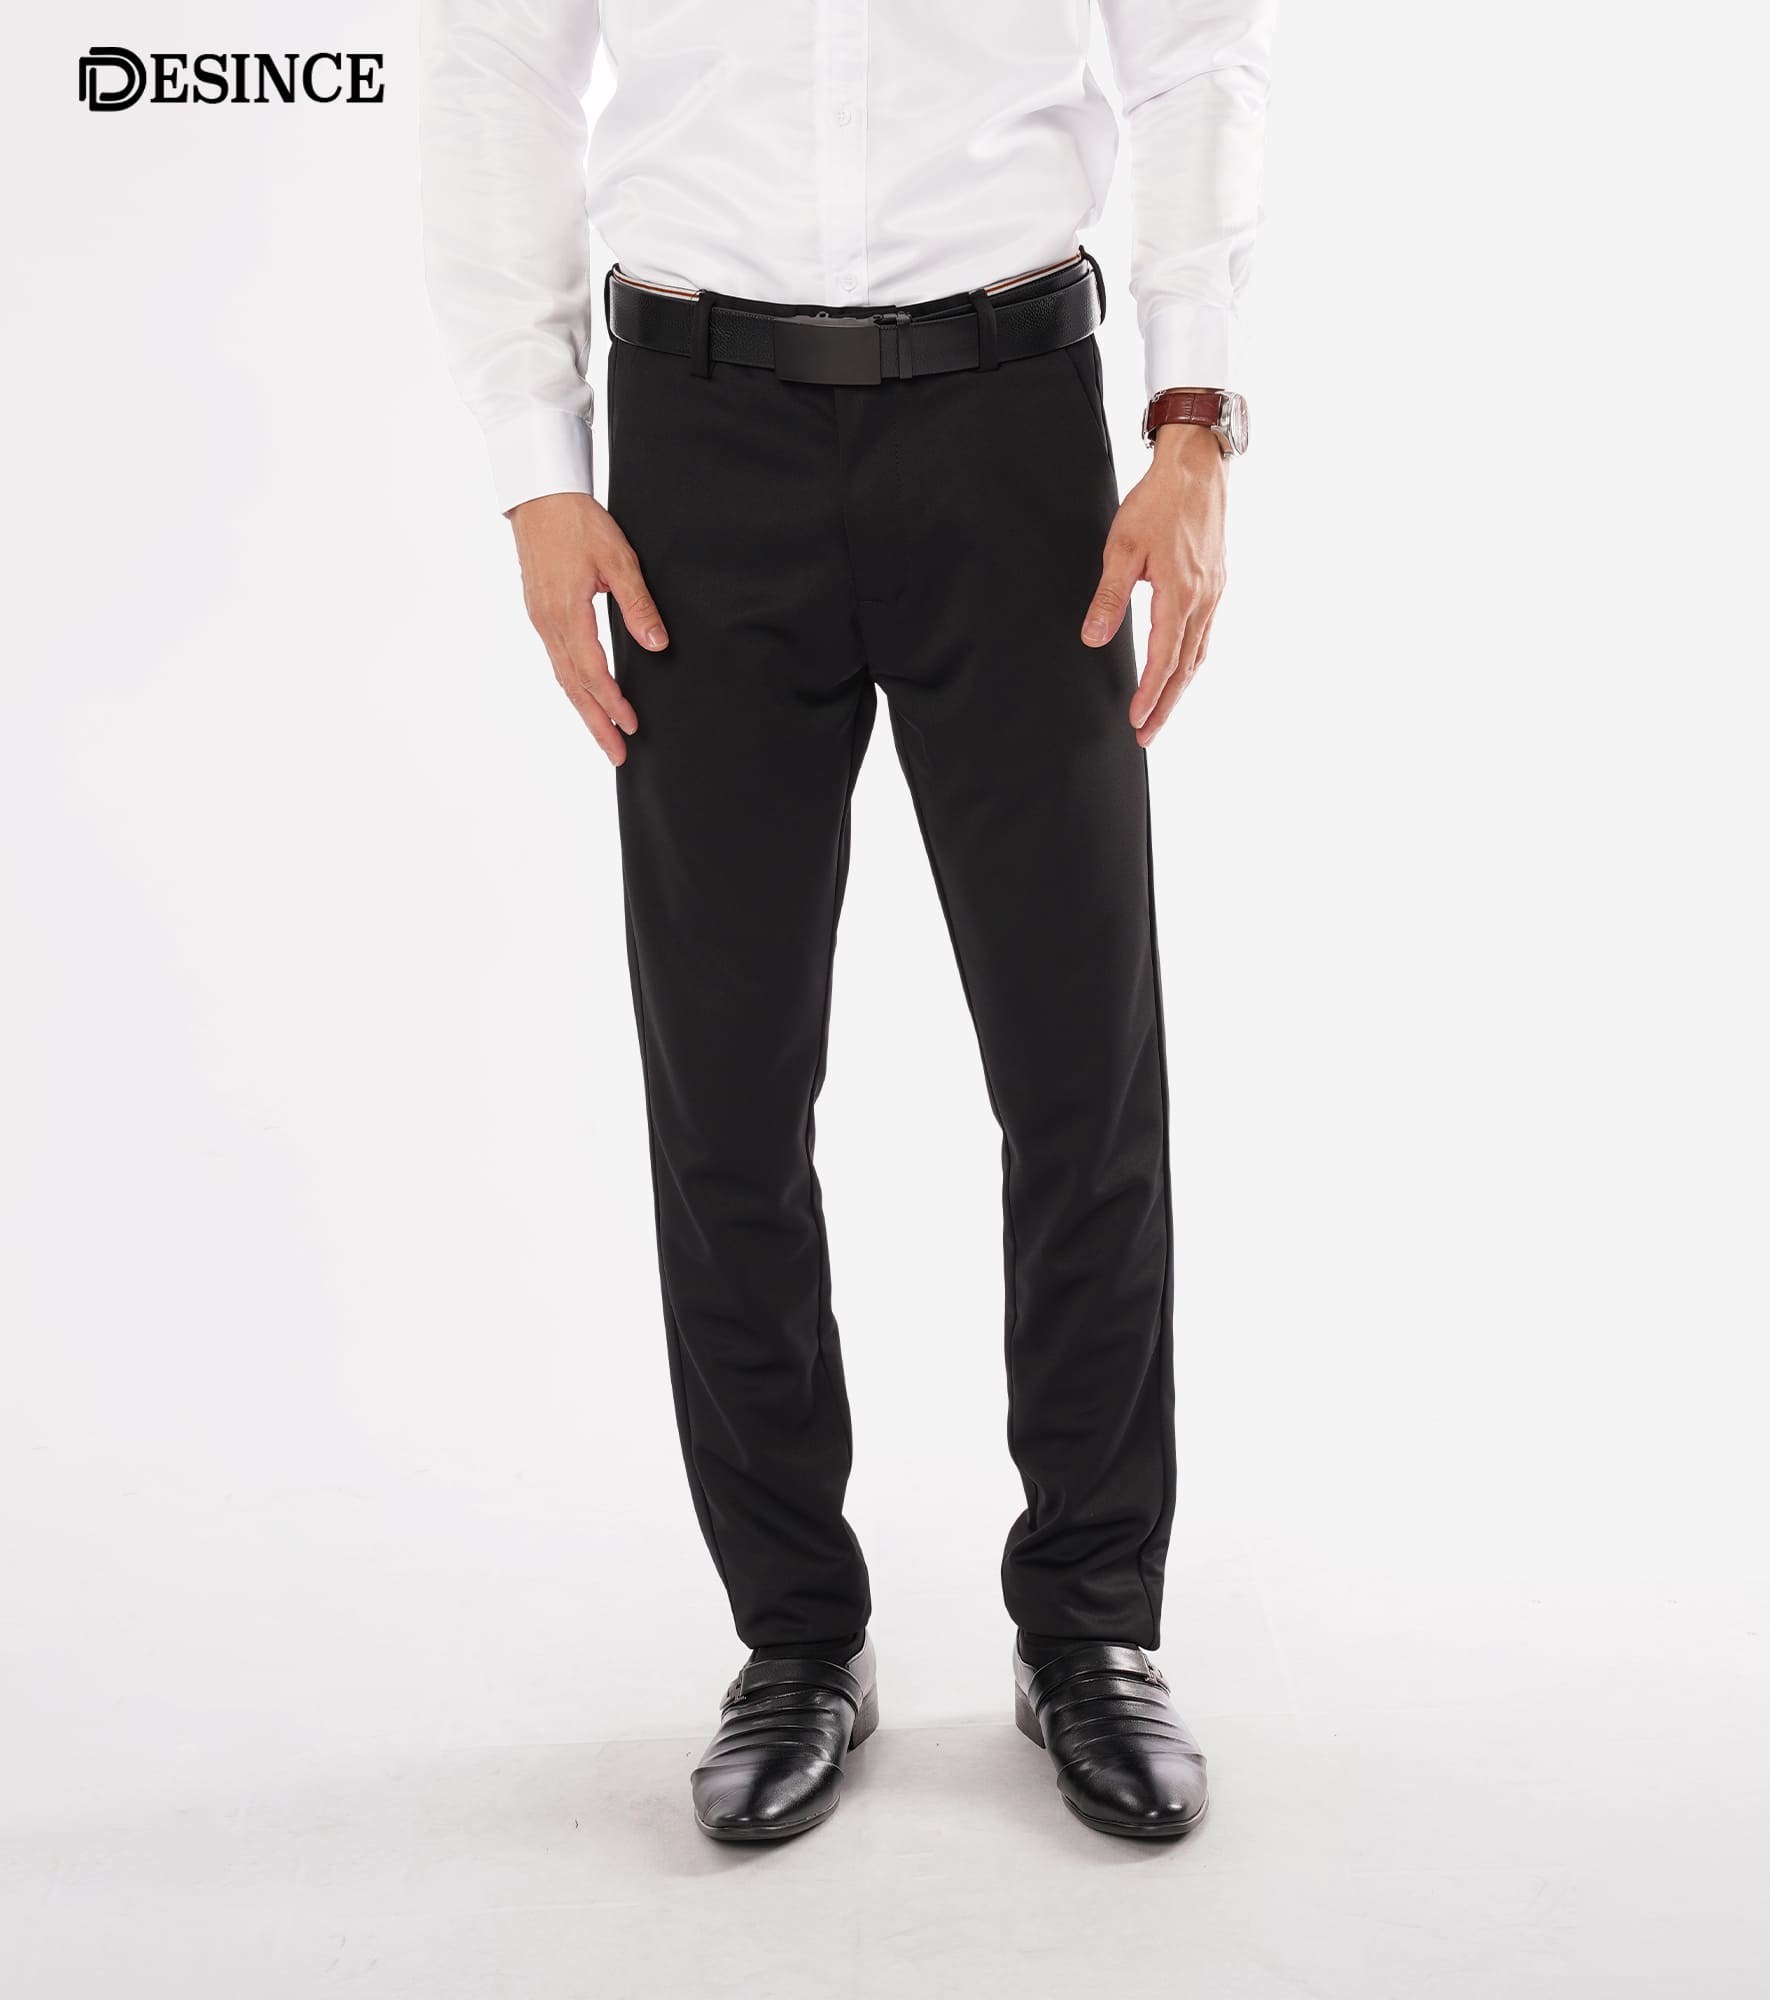 Decible formal Pants for Men, Men's Slim fit Formal Pant